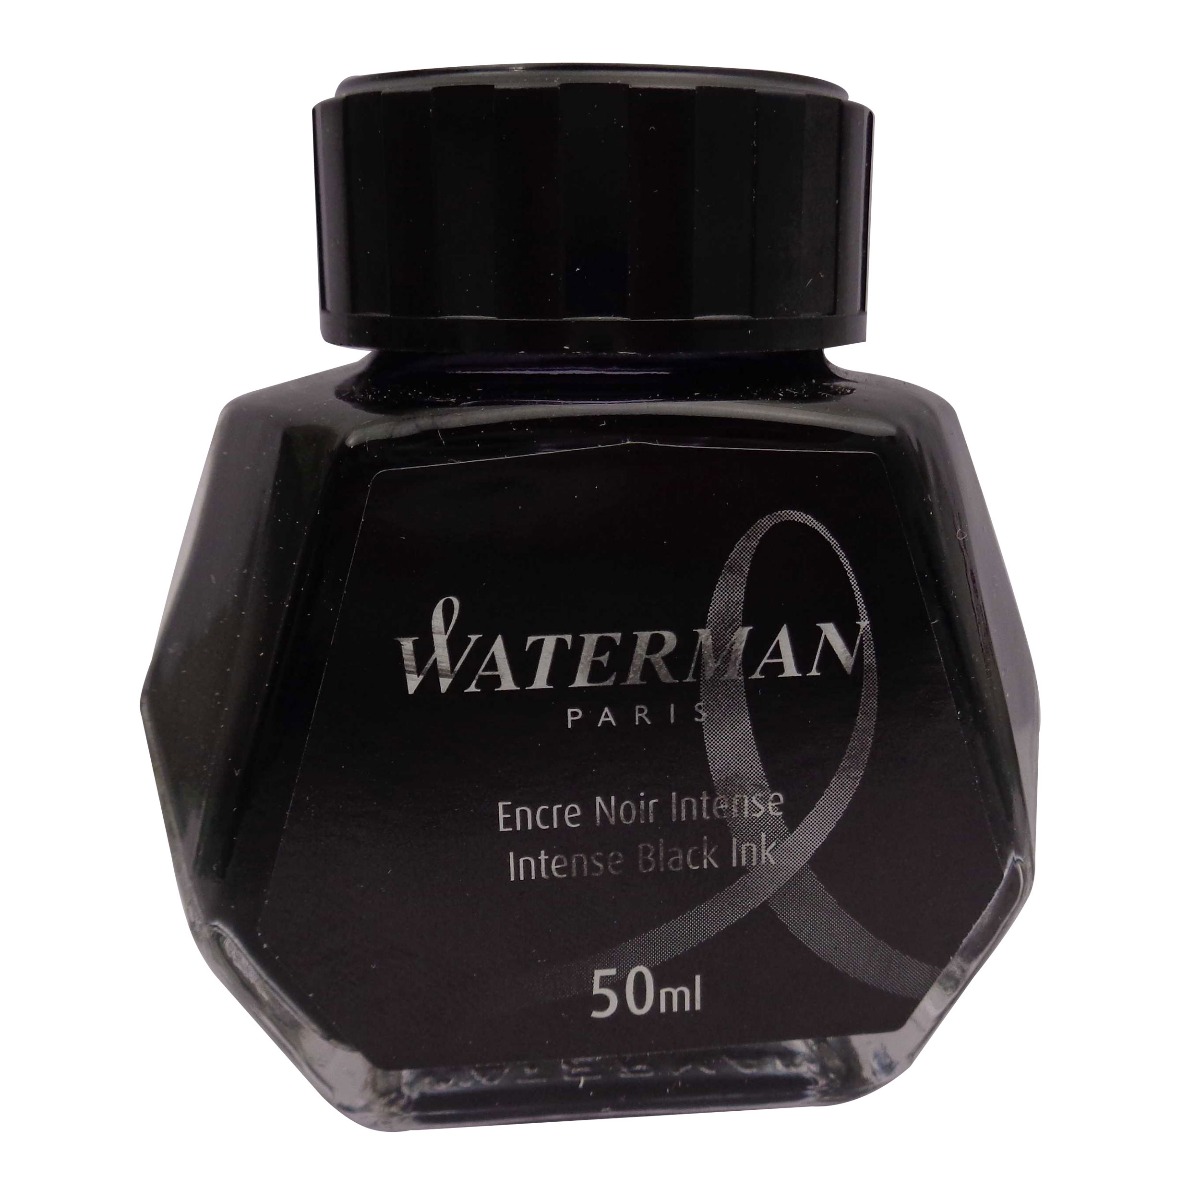 Waterman  Model: 70018  Intense Black ink 50ml  ink bottle